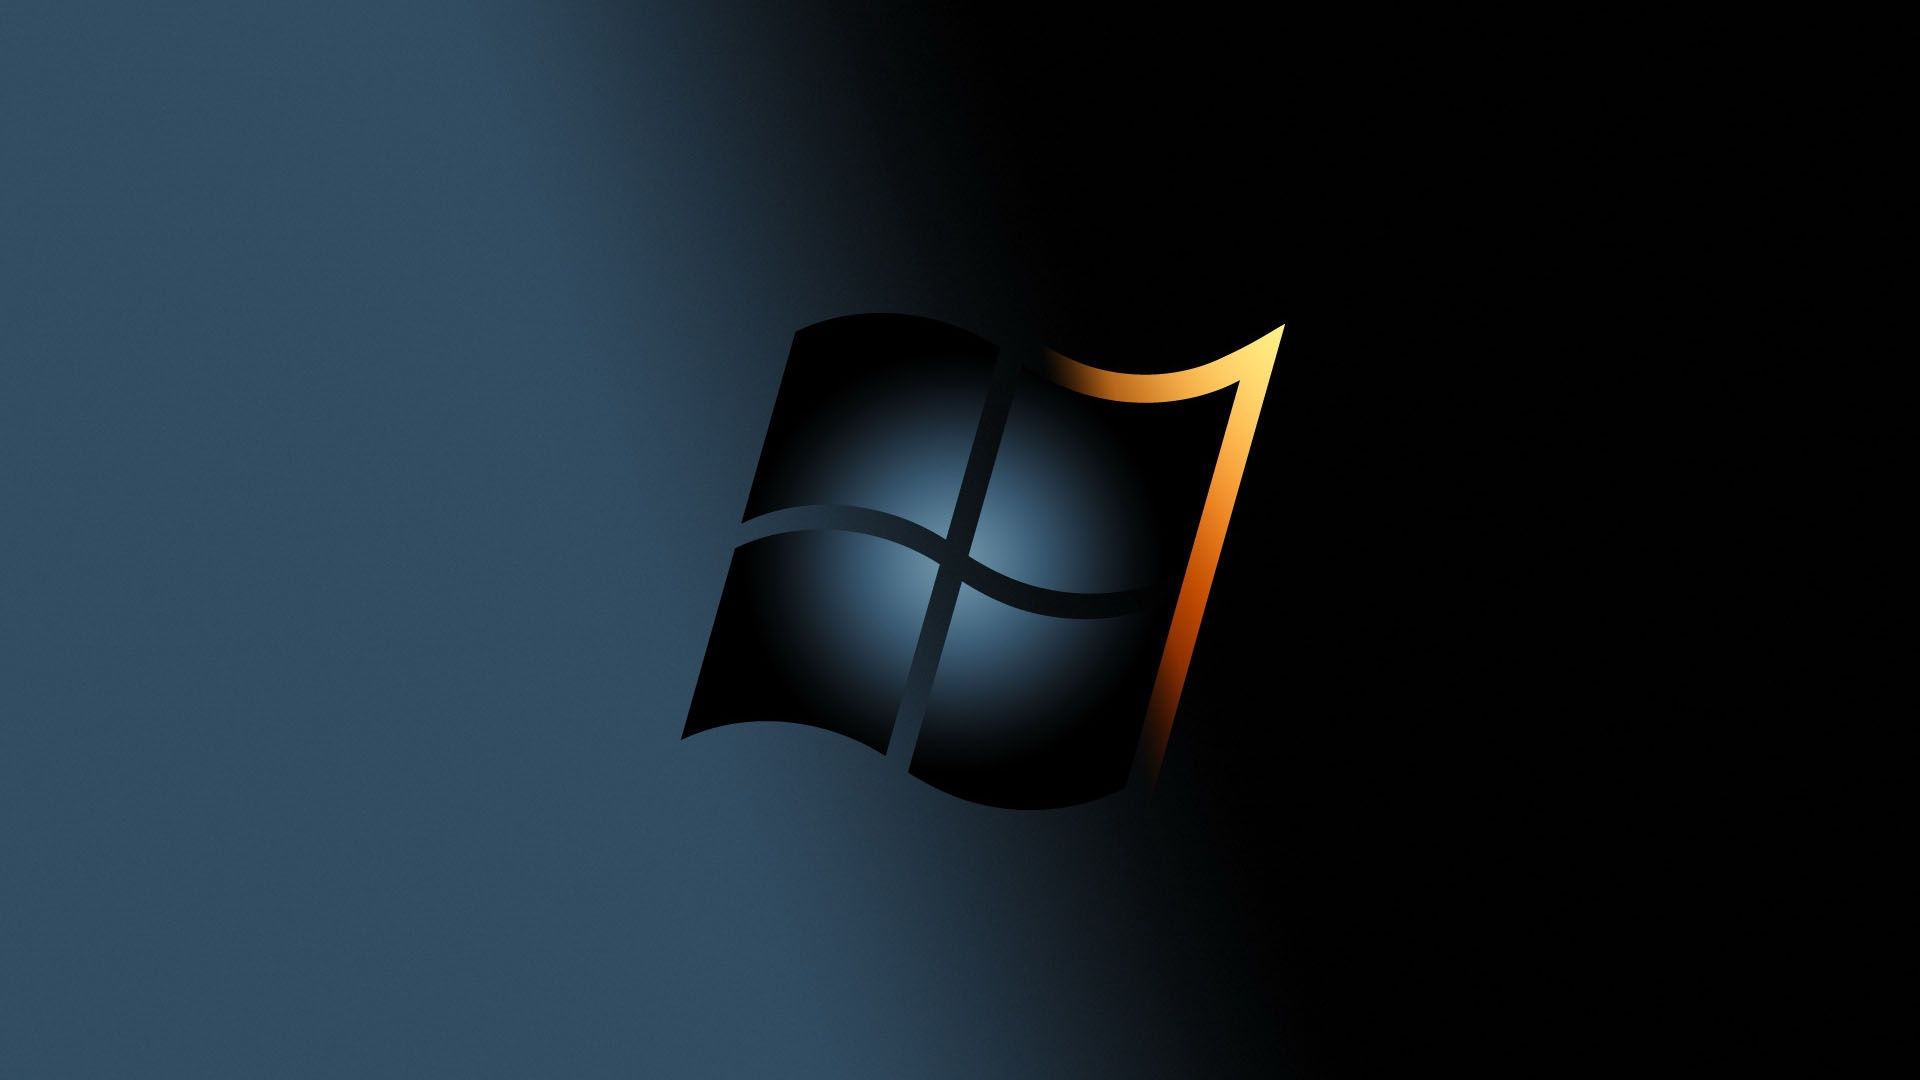 Bạn đang tìm kiếm những hình nền desktop Windows 7 SF độc đáo và đẹp mắt? Chúng tôi cung cấp miễn phí những hình nền tuyệt vời cho desktop của bạn. Đừng lo lắng về việc trang trí màn hình máy tính của bạn nữa, hãy tải về những hình nền đa dạng của chúng tôi và trang trí màn hình của bạn ngay hôm nay.